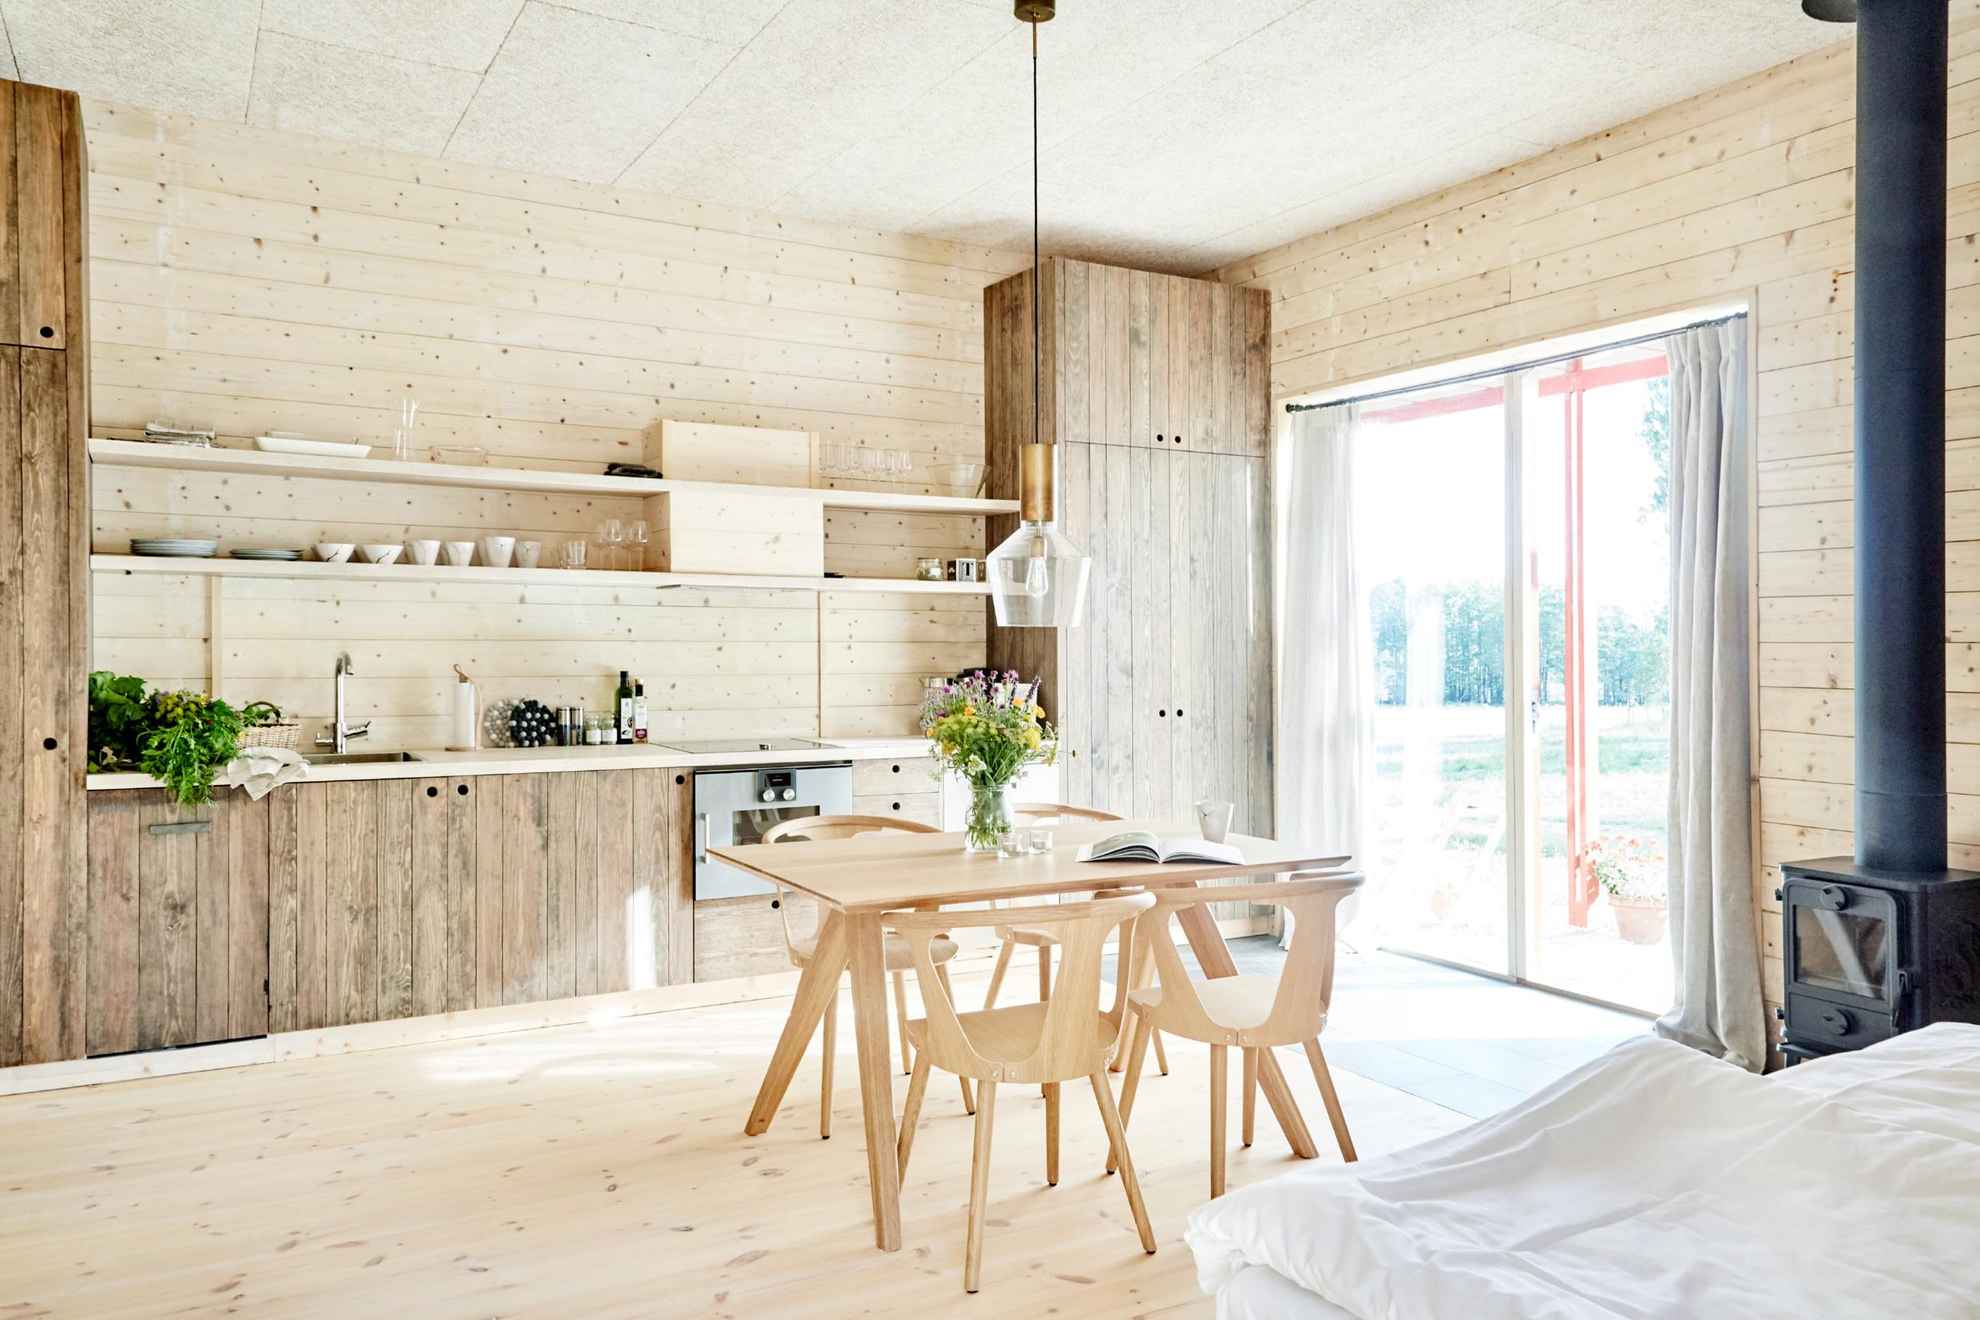 Ein Zimmer mit einer Küche, Bett, Kamin, Küchentisch und Stühlen. Der Raum hat einen Holzboden und Wände, und zwei Glastüren führen auf eine Terrasse.